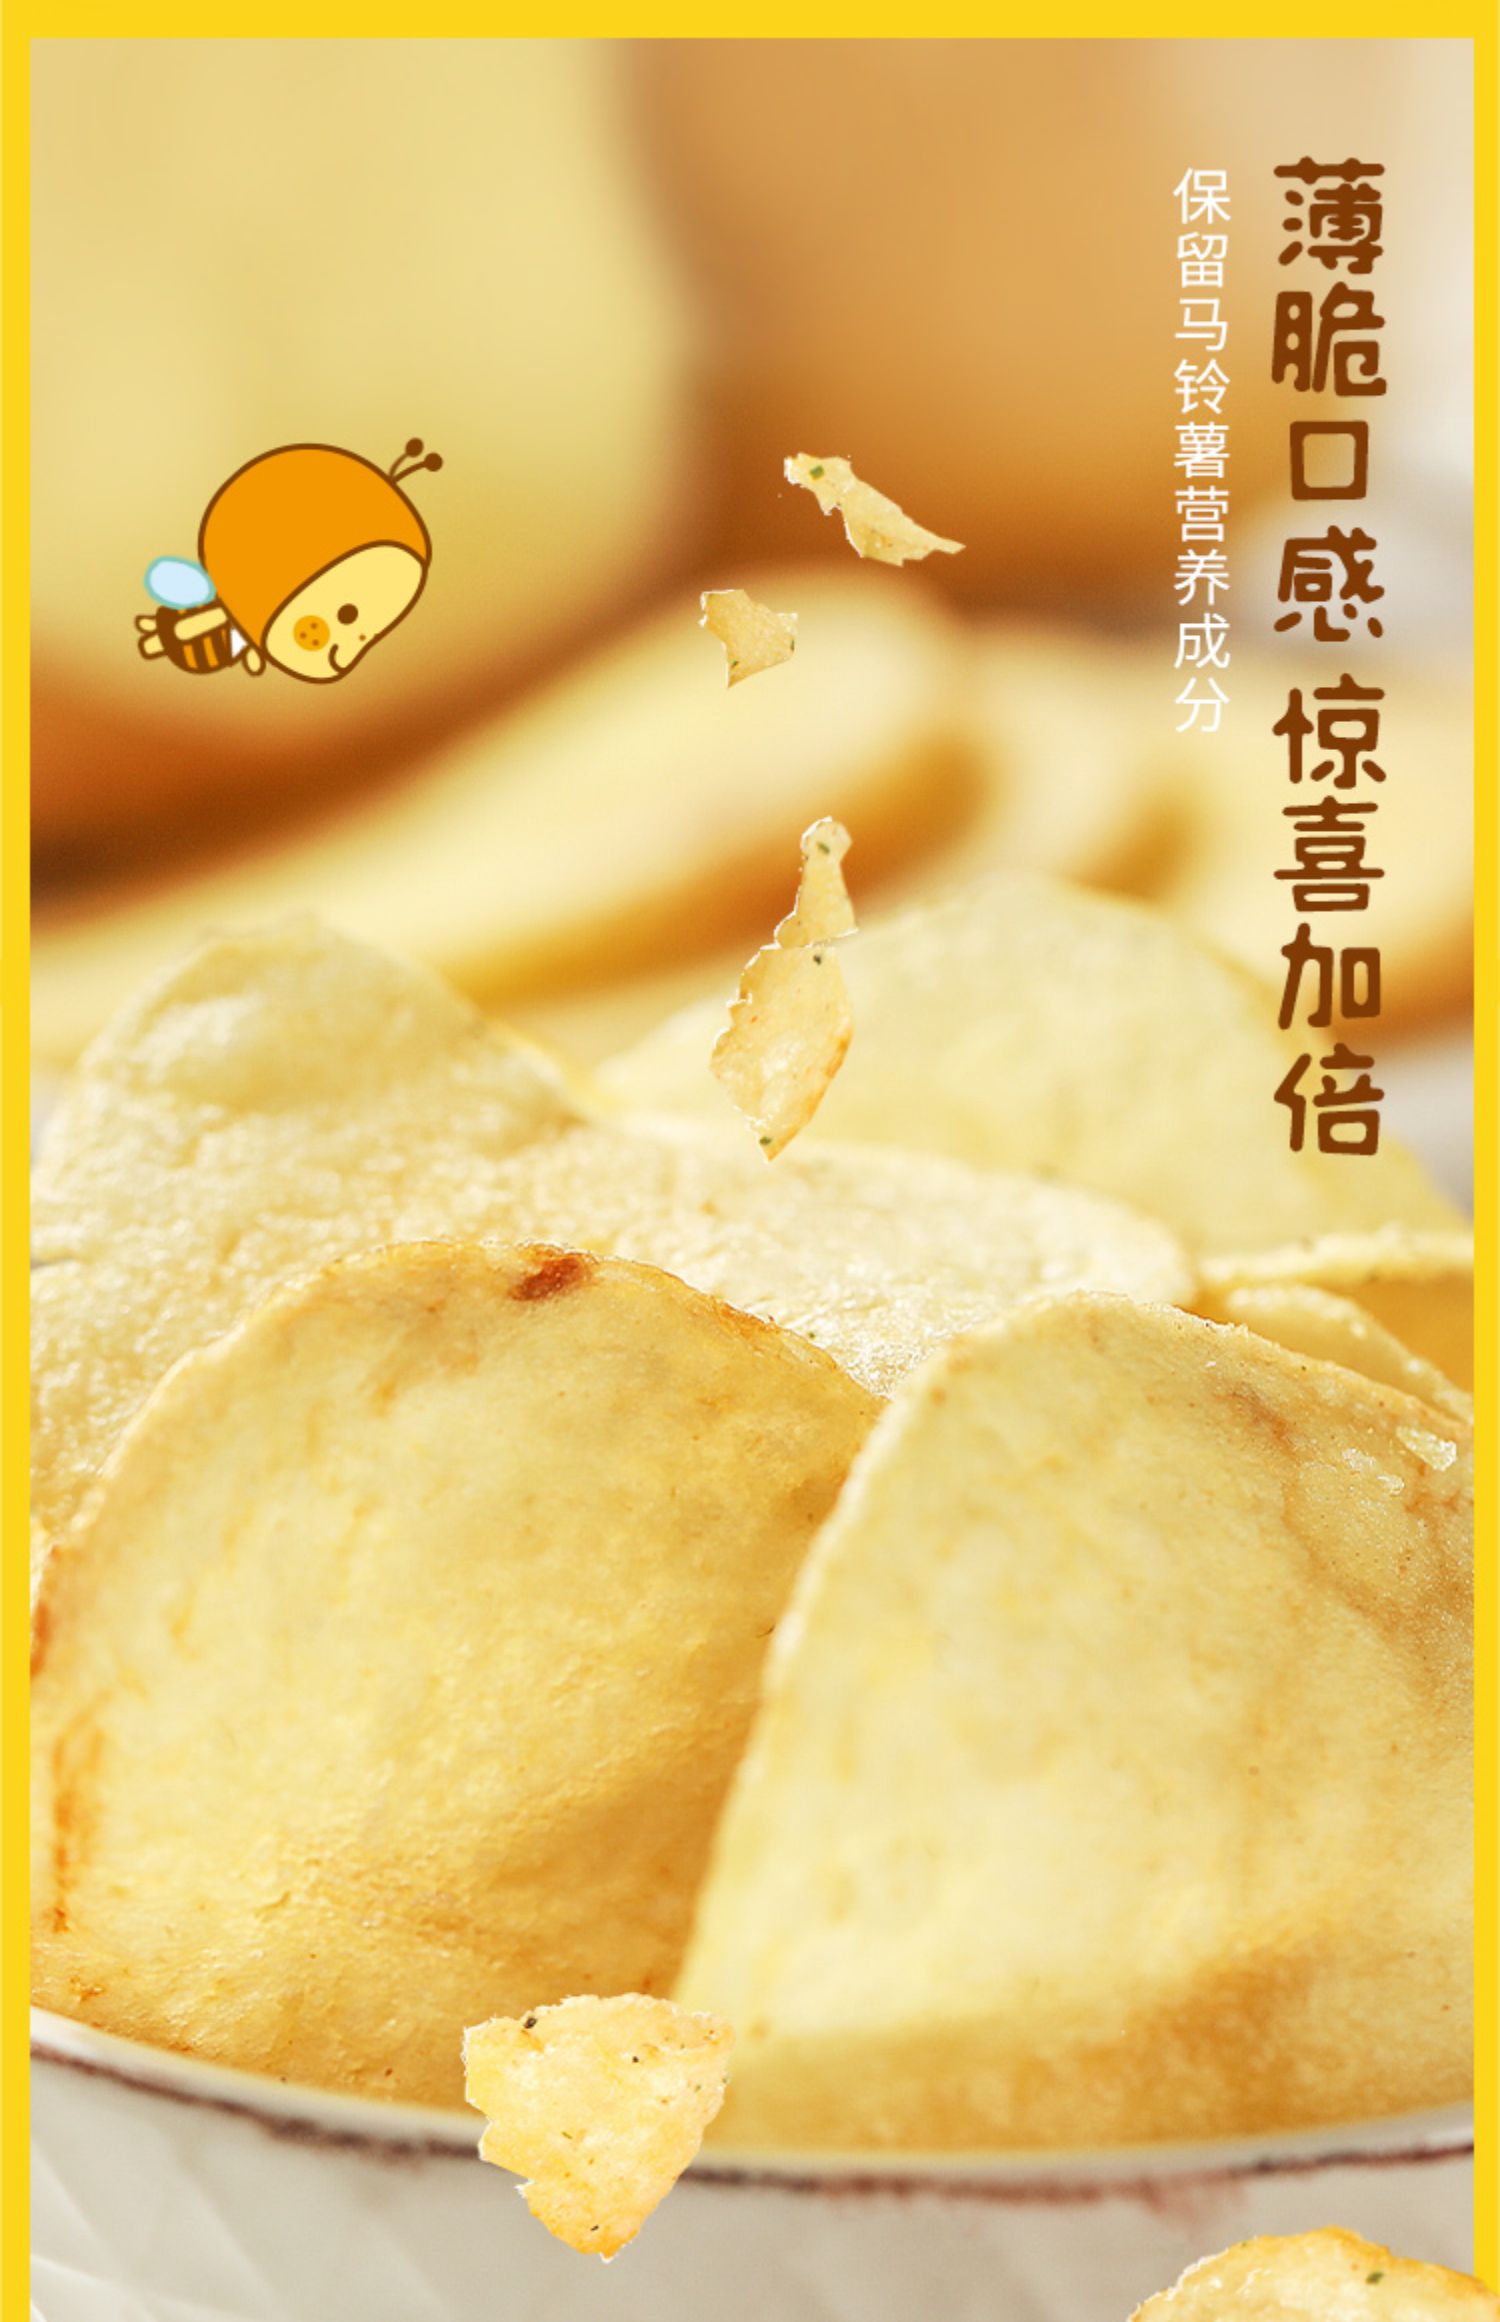 【张艺兴同款】卡乐比海太蜂蜜黄油薯片6包